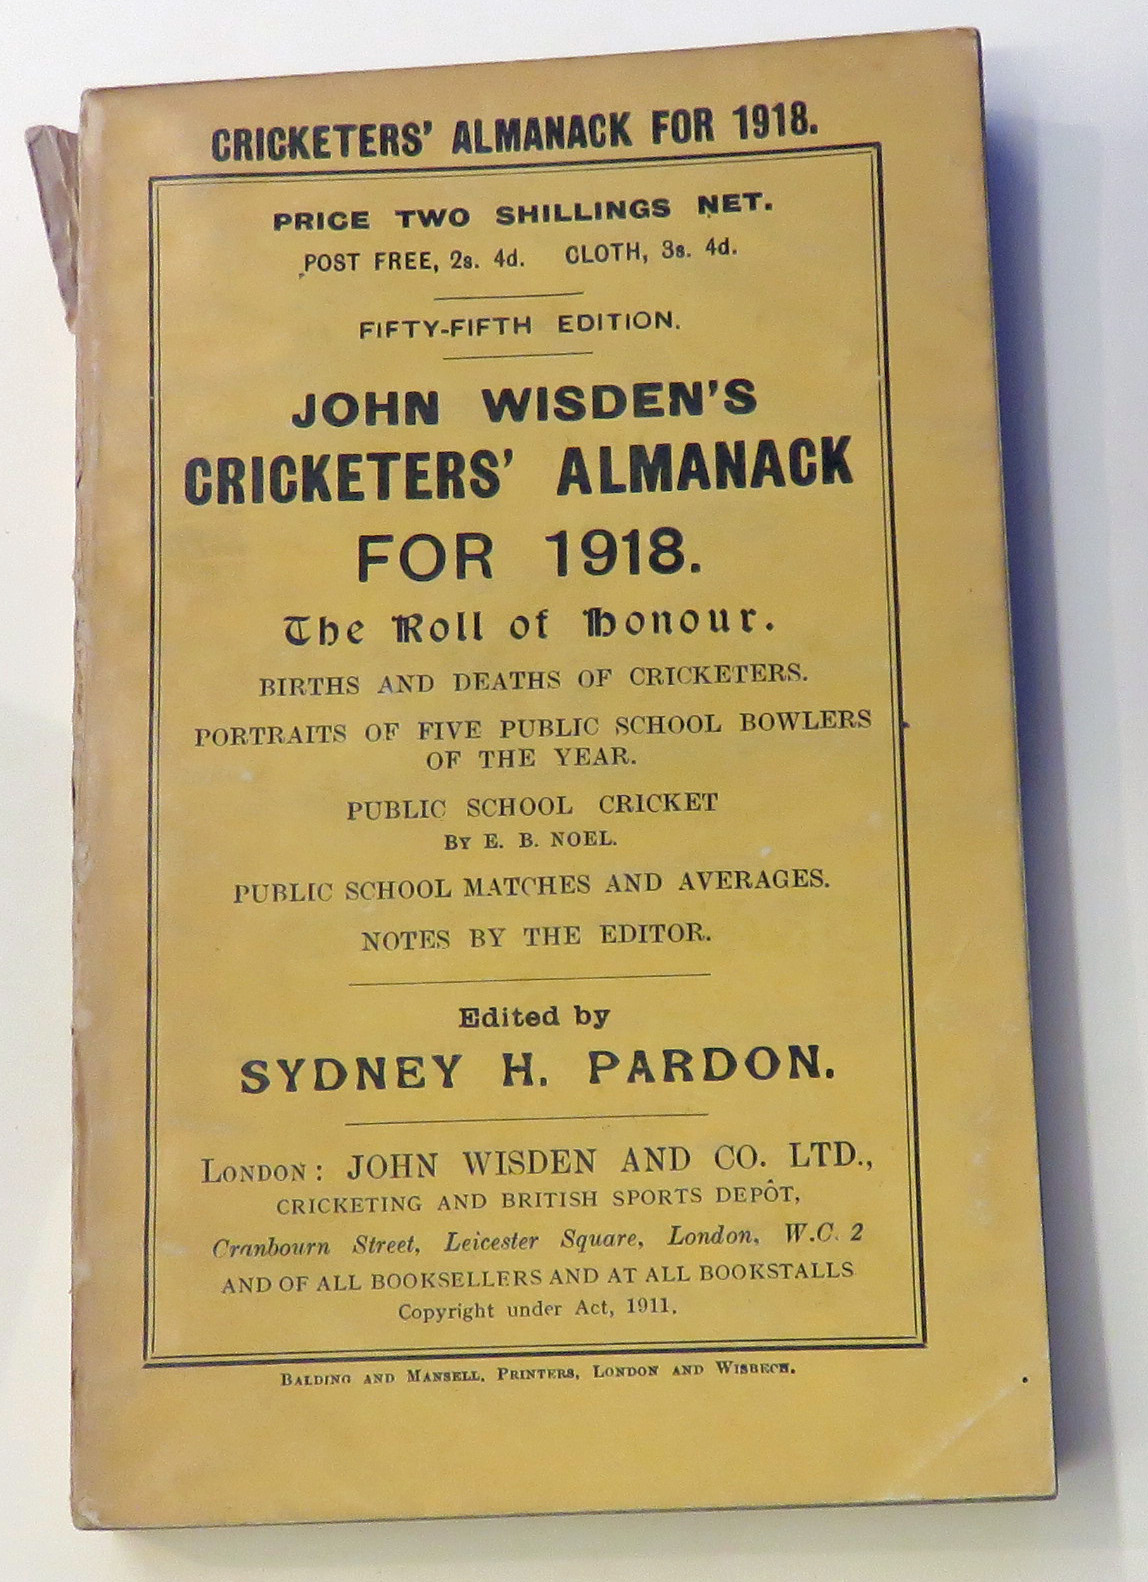 **John Wisden's Cricketers' Almanack For 1918